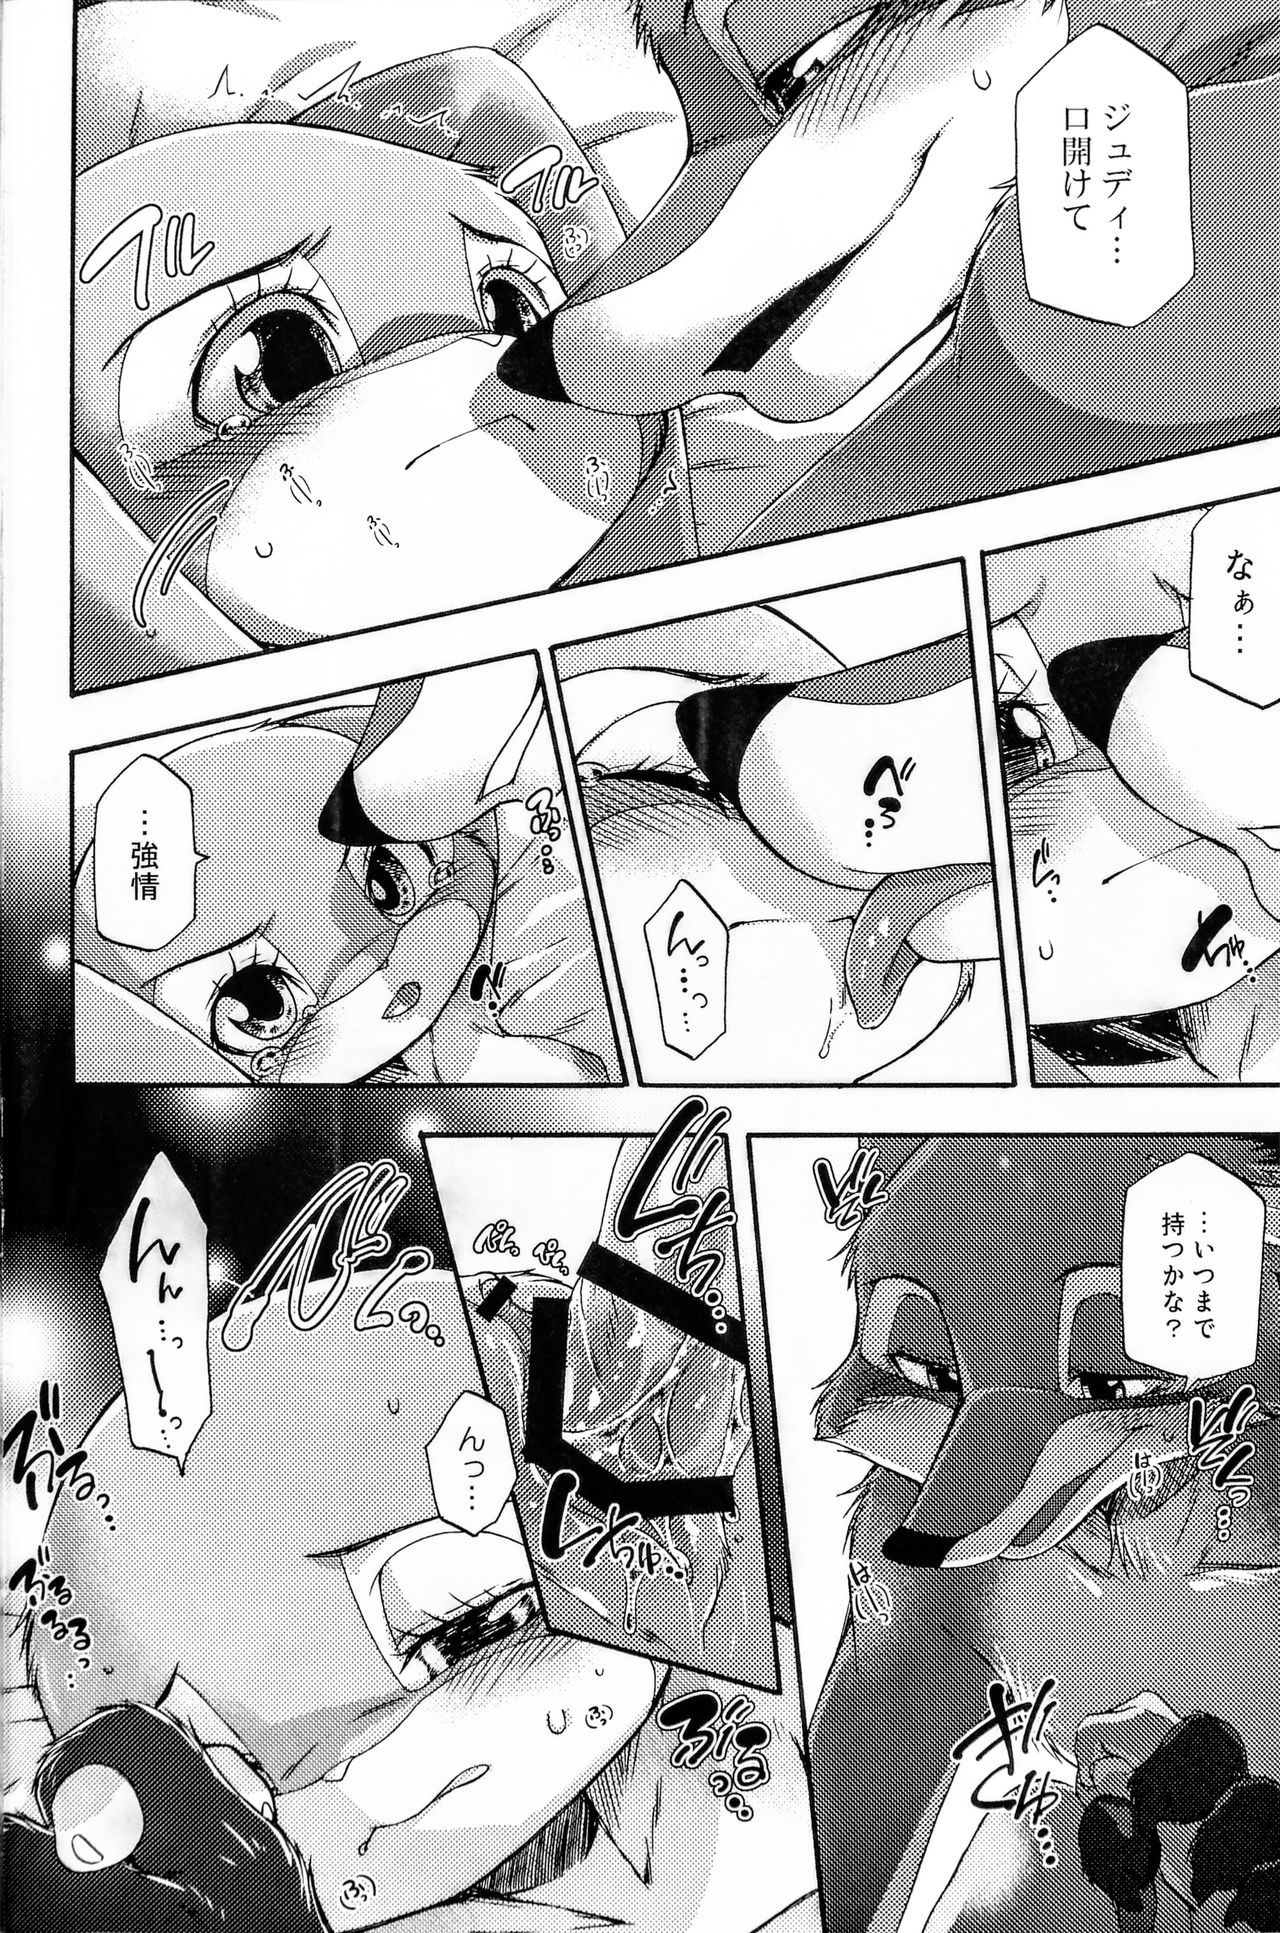 (Kansai! Kemoket 6, SPARK12) [Dogear (Inumimi Moeta)] Naki Rabbit (Zootopia) (関西!けもケット6、SPARK12) [Dogear (犬耳もえ太)] ナキウサギ (ズートピア)